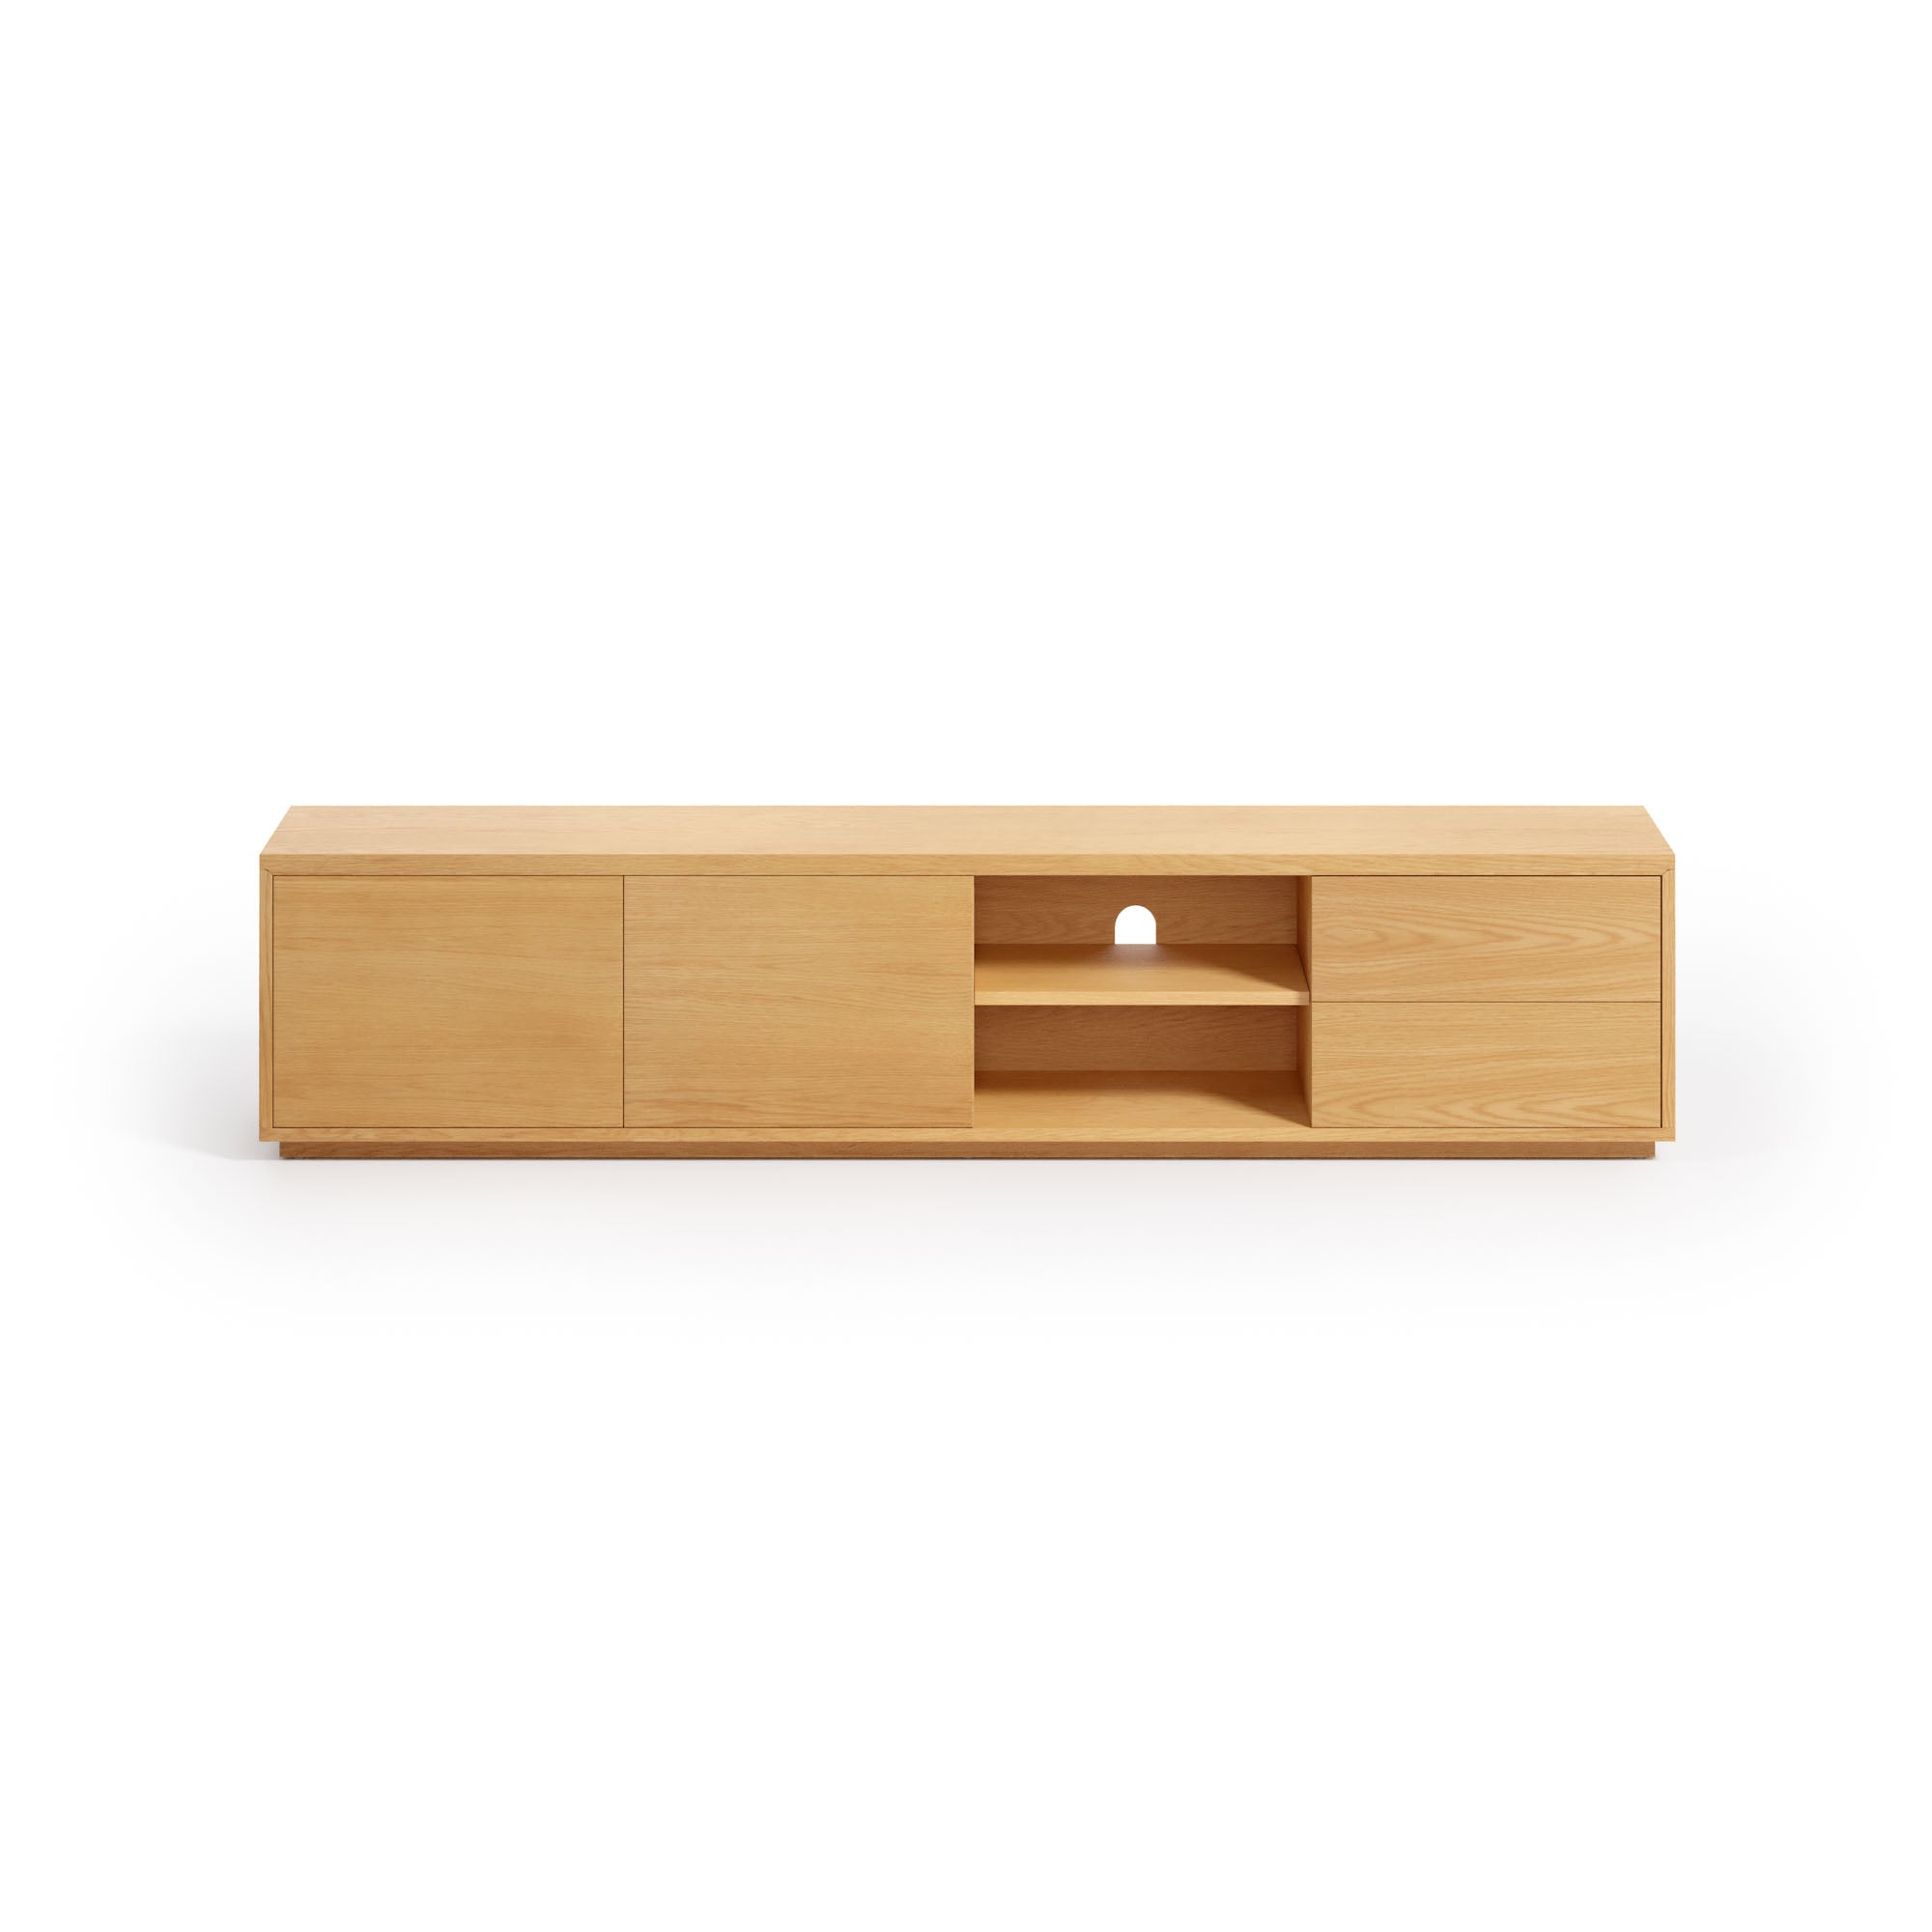 Abilen oak wood veneer 2 door TV stand with 2 drawers, 200 x 44 cm FSC 100%